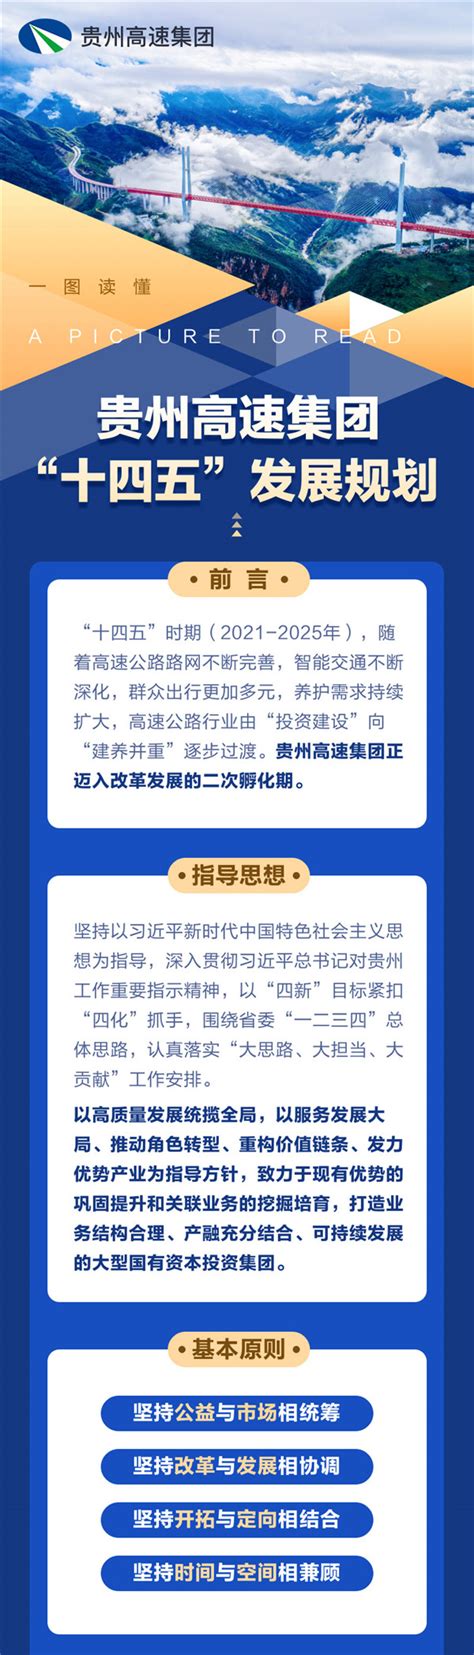 今天，贵州高速集团“十四五”发展规划正式出炉！_贵州黔通智联科技股份有限公司